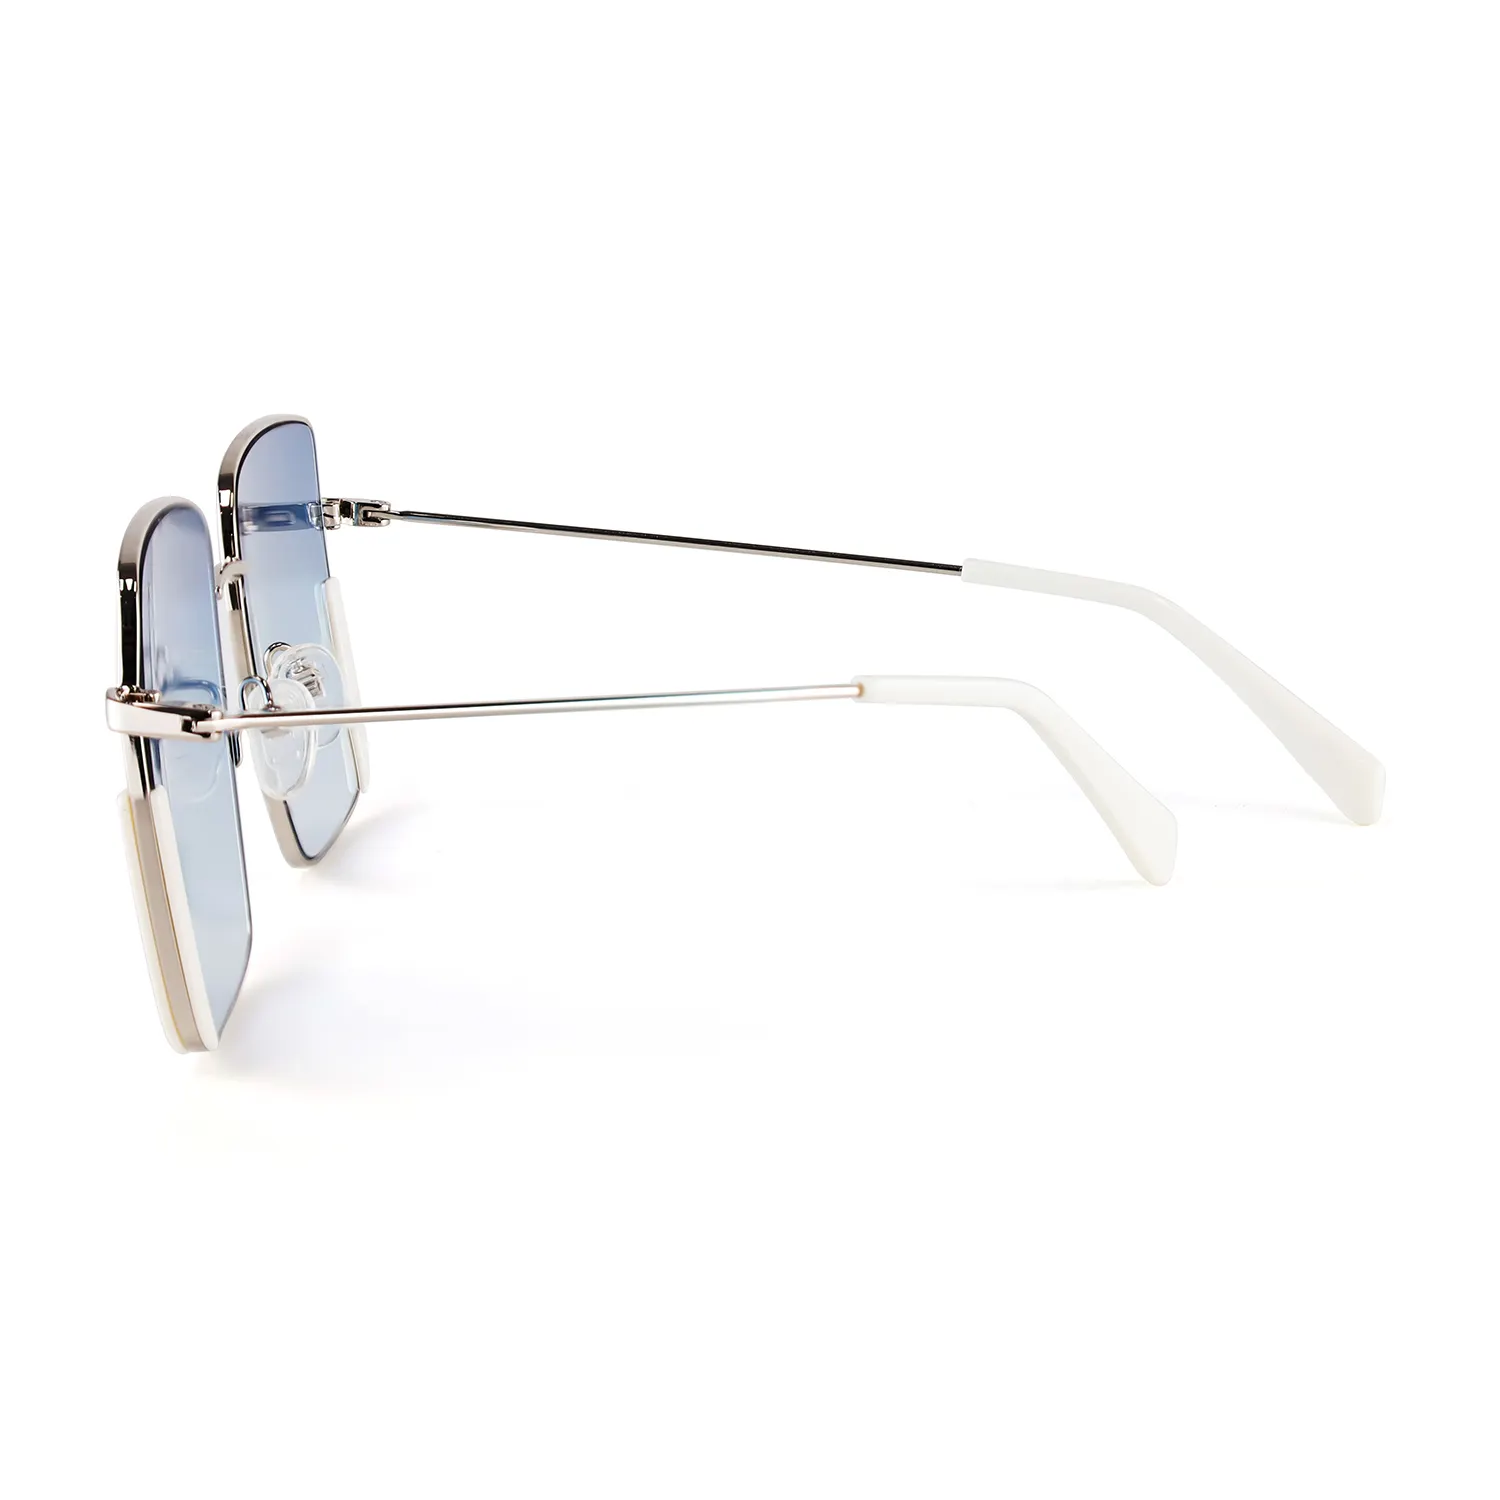 Figroad Shenzhen kacamata besar klasik UV400 terpolarisasi untuk pria dan wanita pabrikan langsung